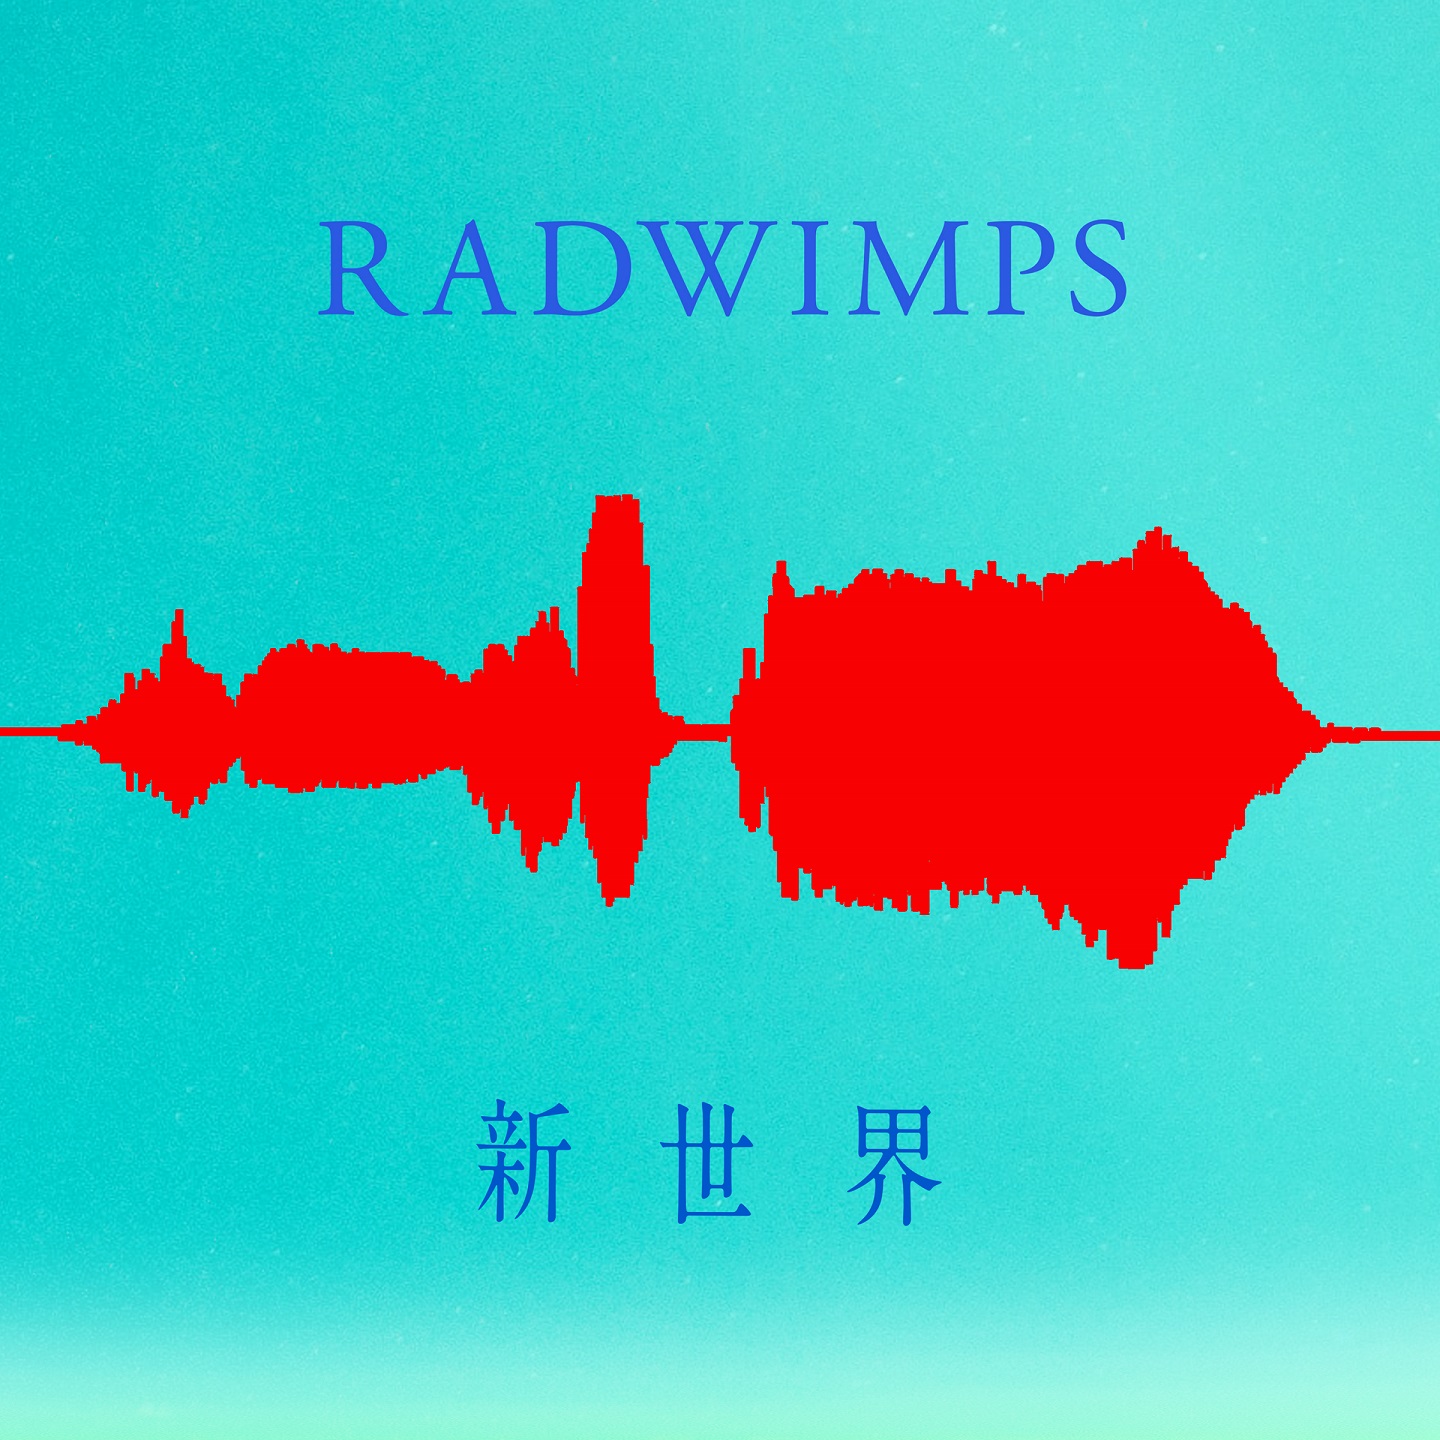 Radwimps 新专辑 天气之子 5首电影主题曲标题公开 Moshi Moshi Nippon もしもしにっぽん